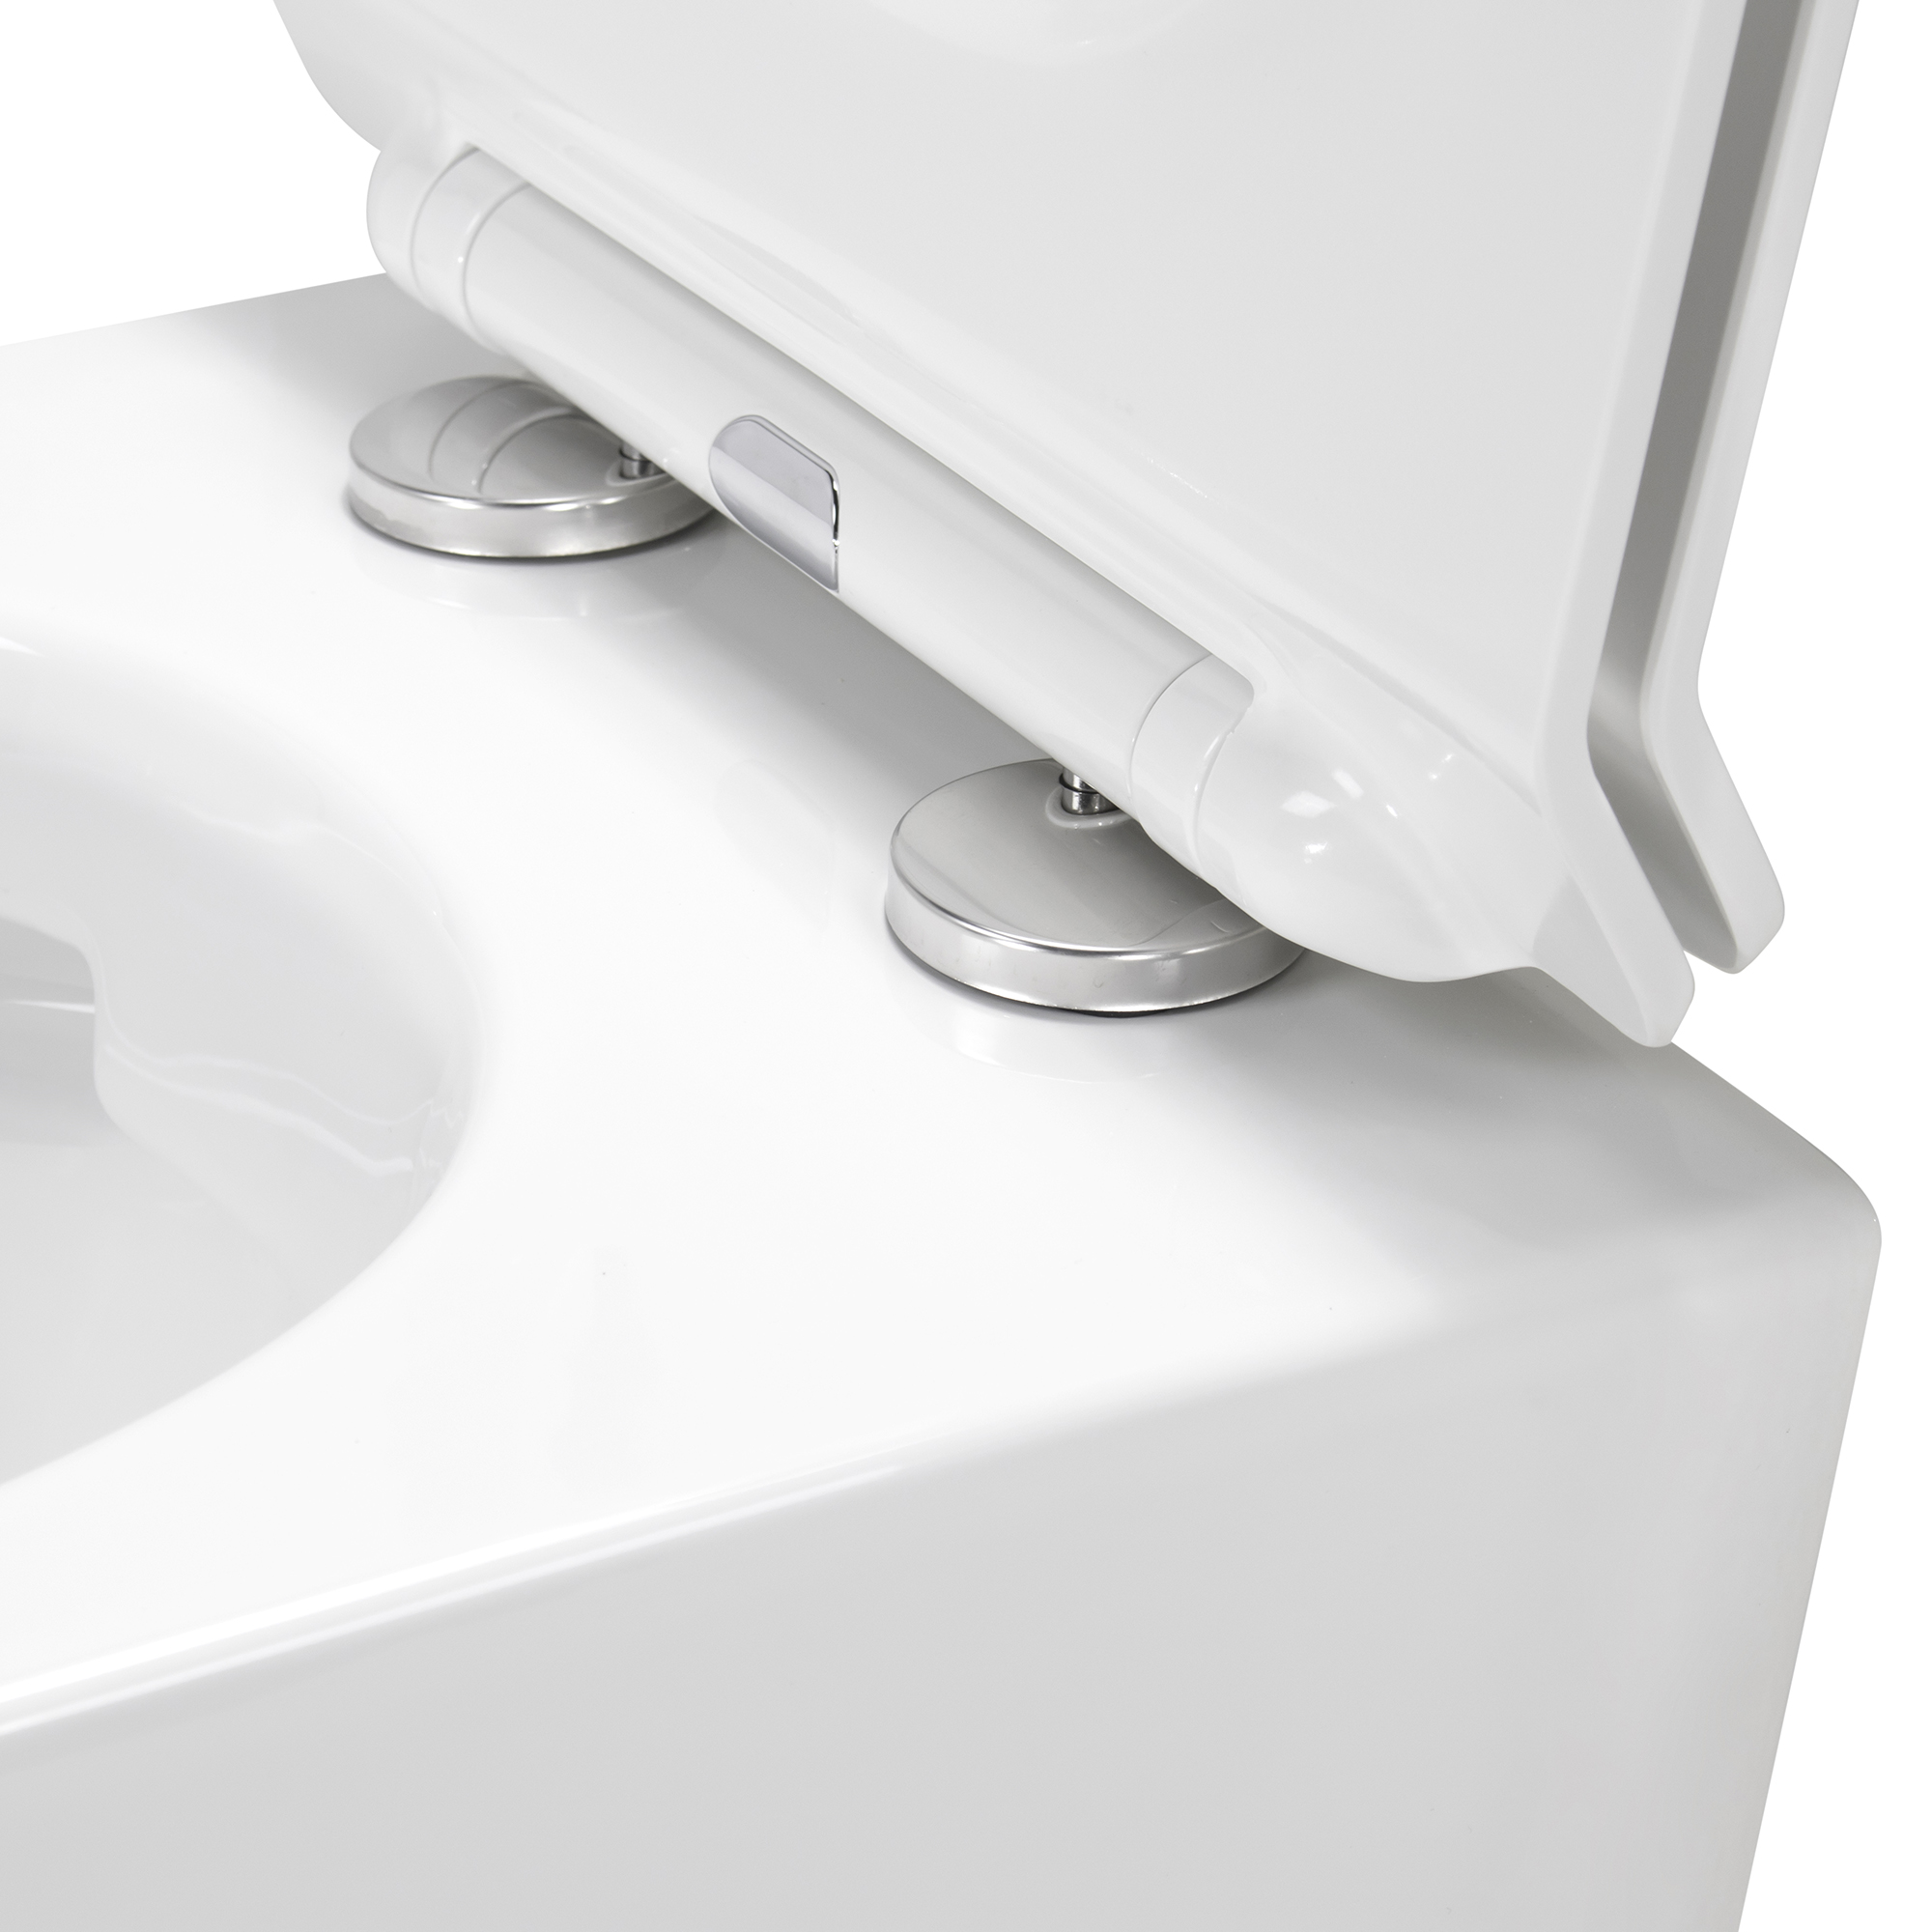 Toilette Hänge WC Spülrandlos inkl. WC Sitz mit Absenkautomatik SOFTCLOSE + abnehmbar Franco